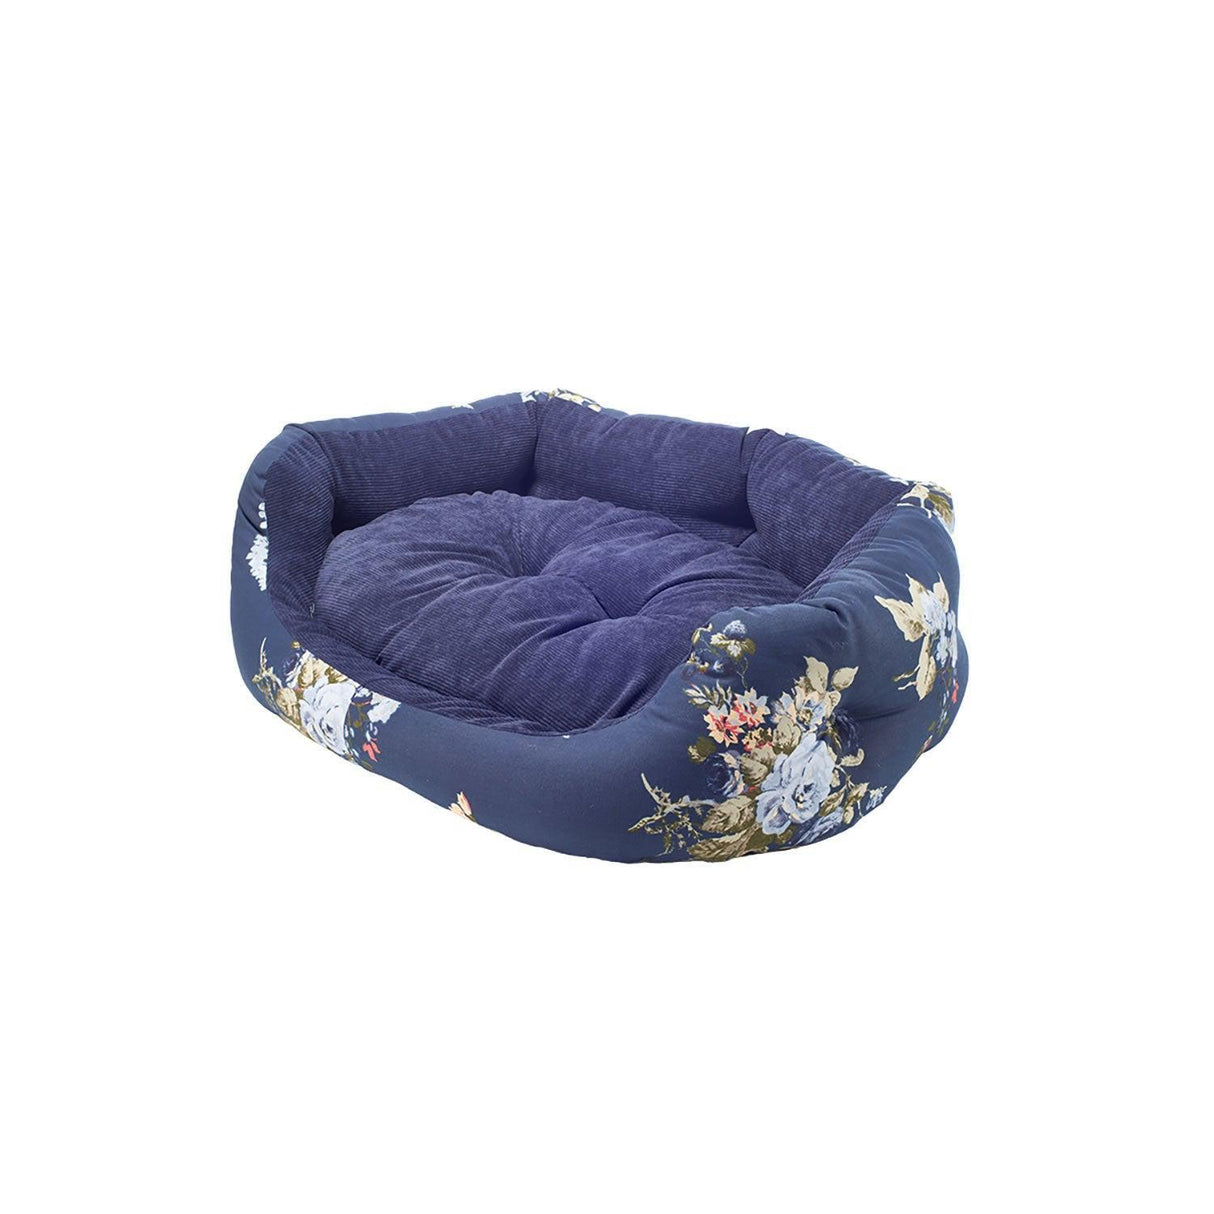 Danish Design Laura Ashley Rosemore Deluxe Slumber Bed  Dog Bed